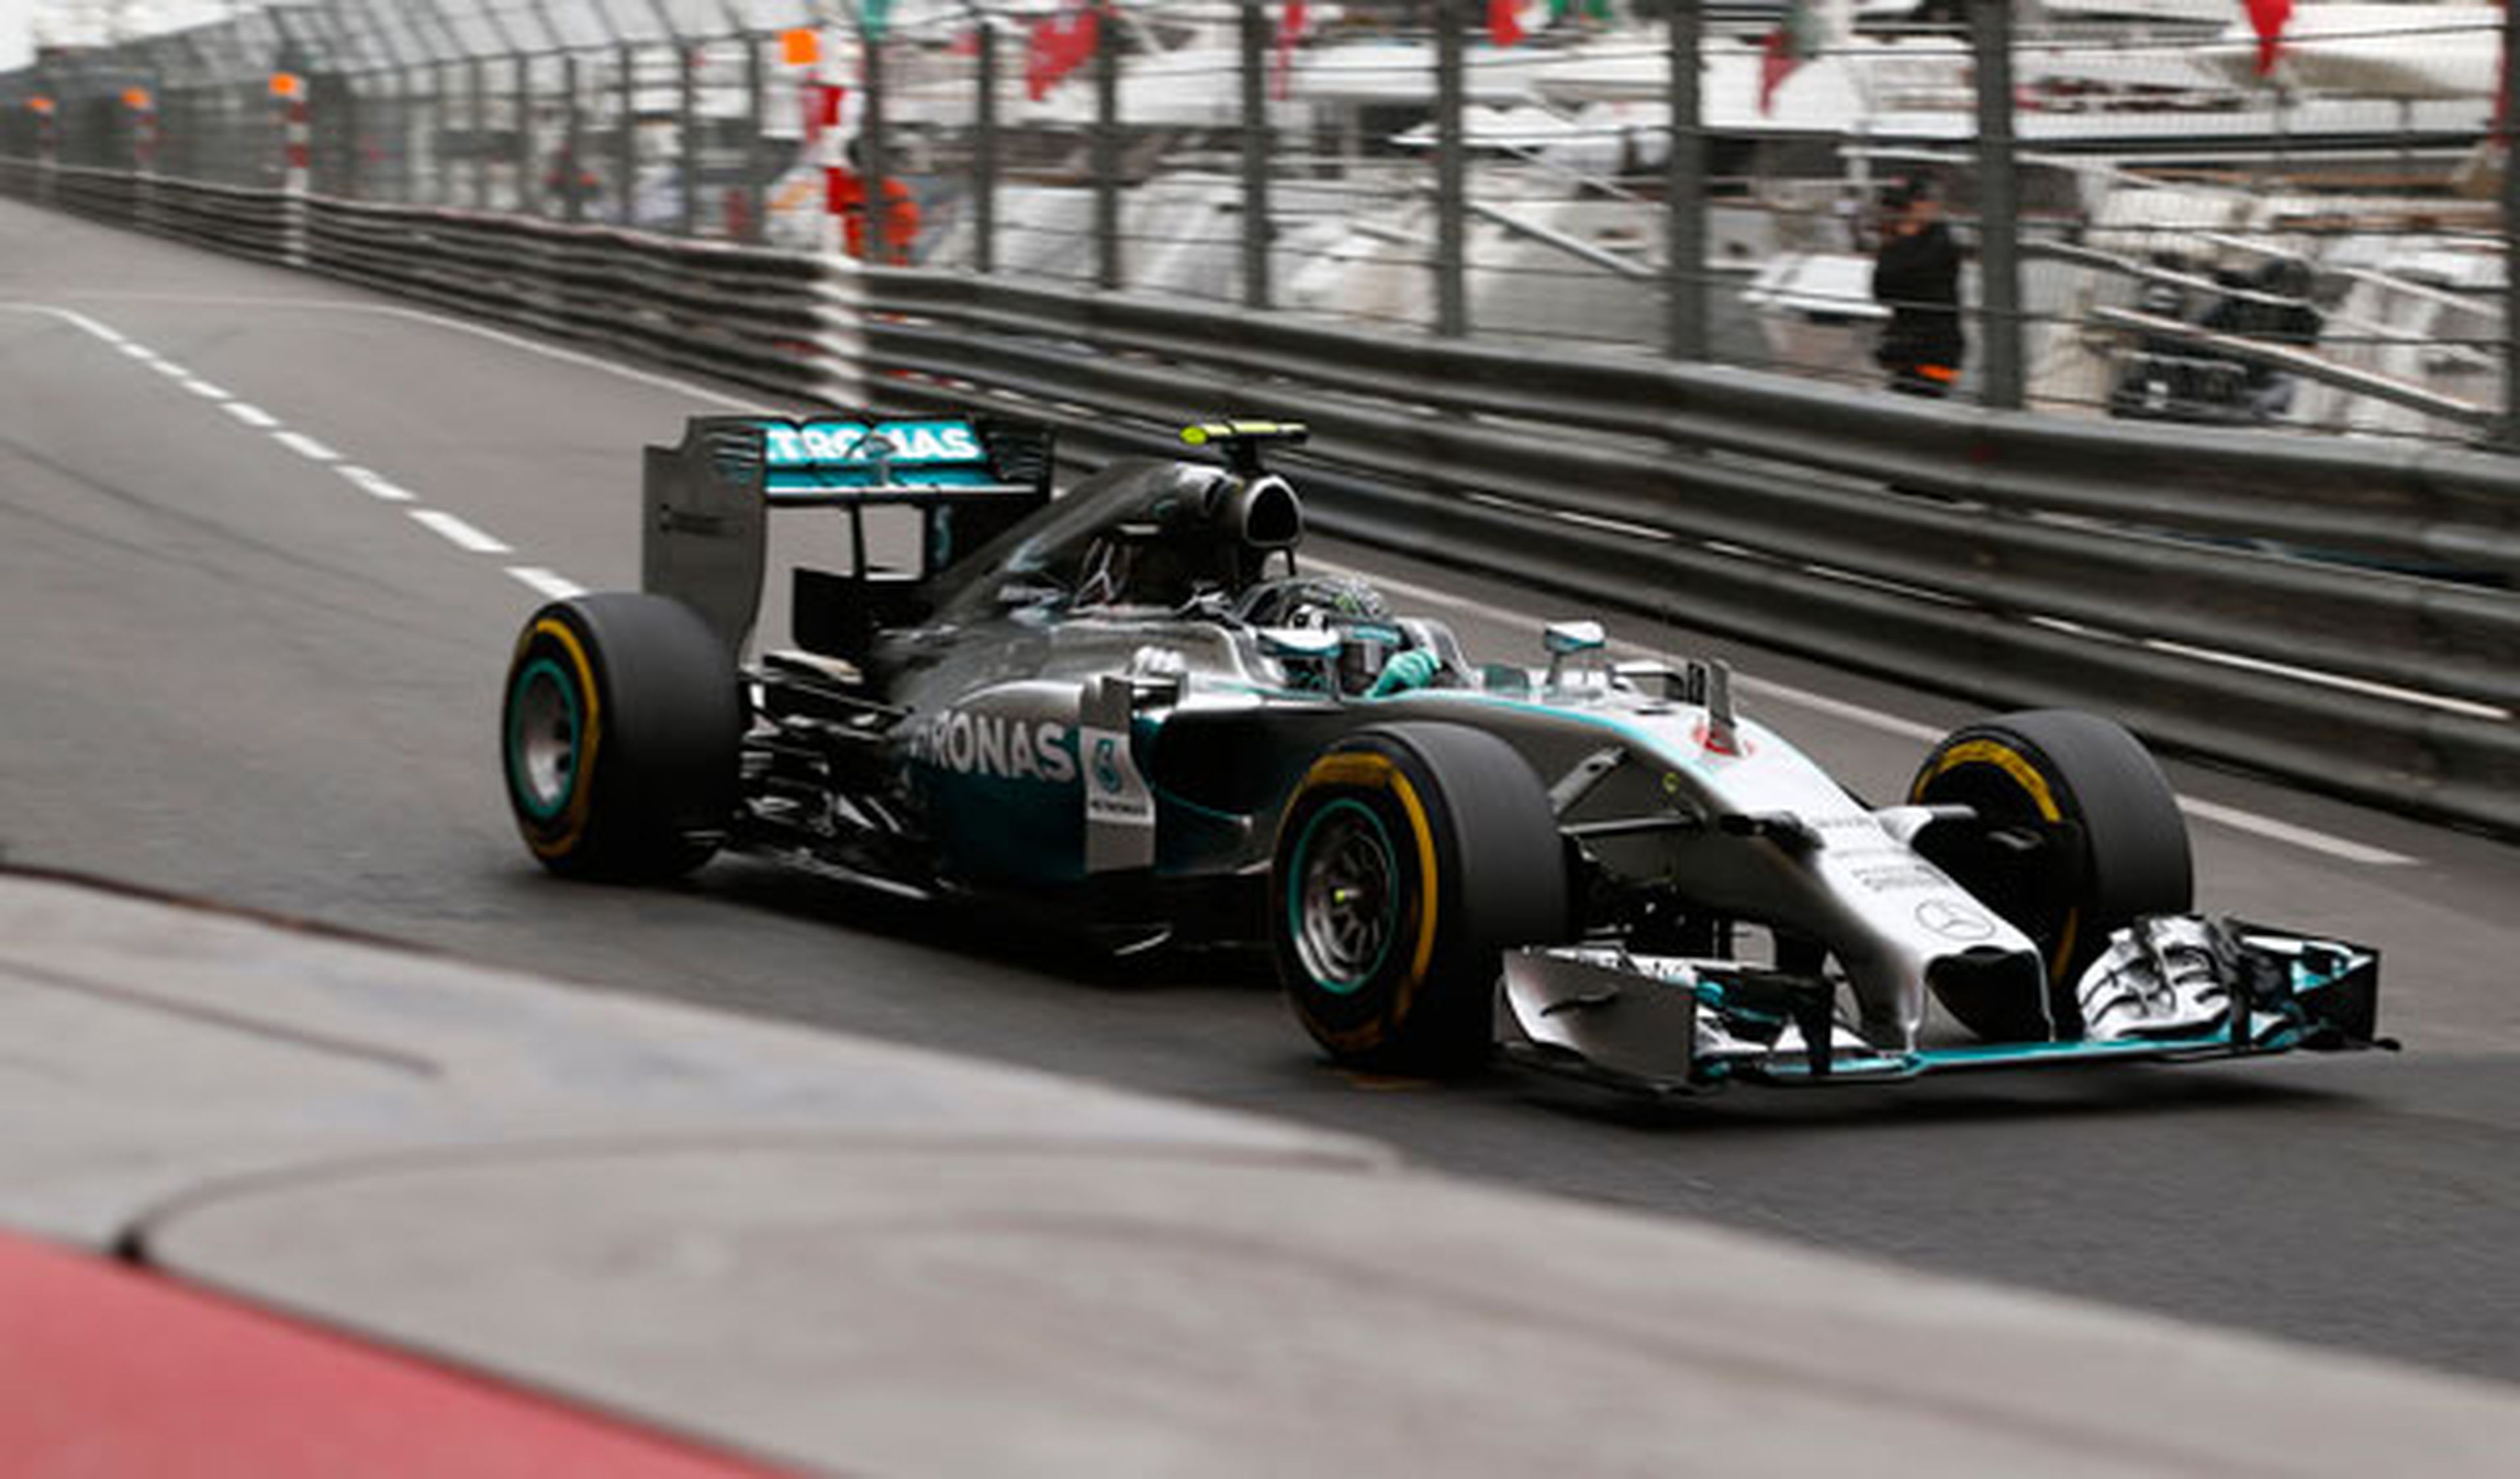 Fórmula 1: Clasificación GP Mónaco 2014. Resultado final